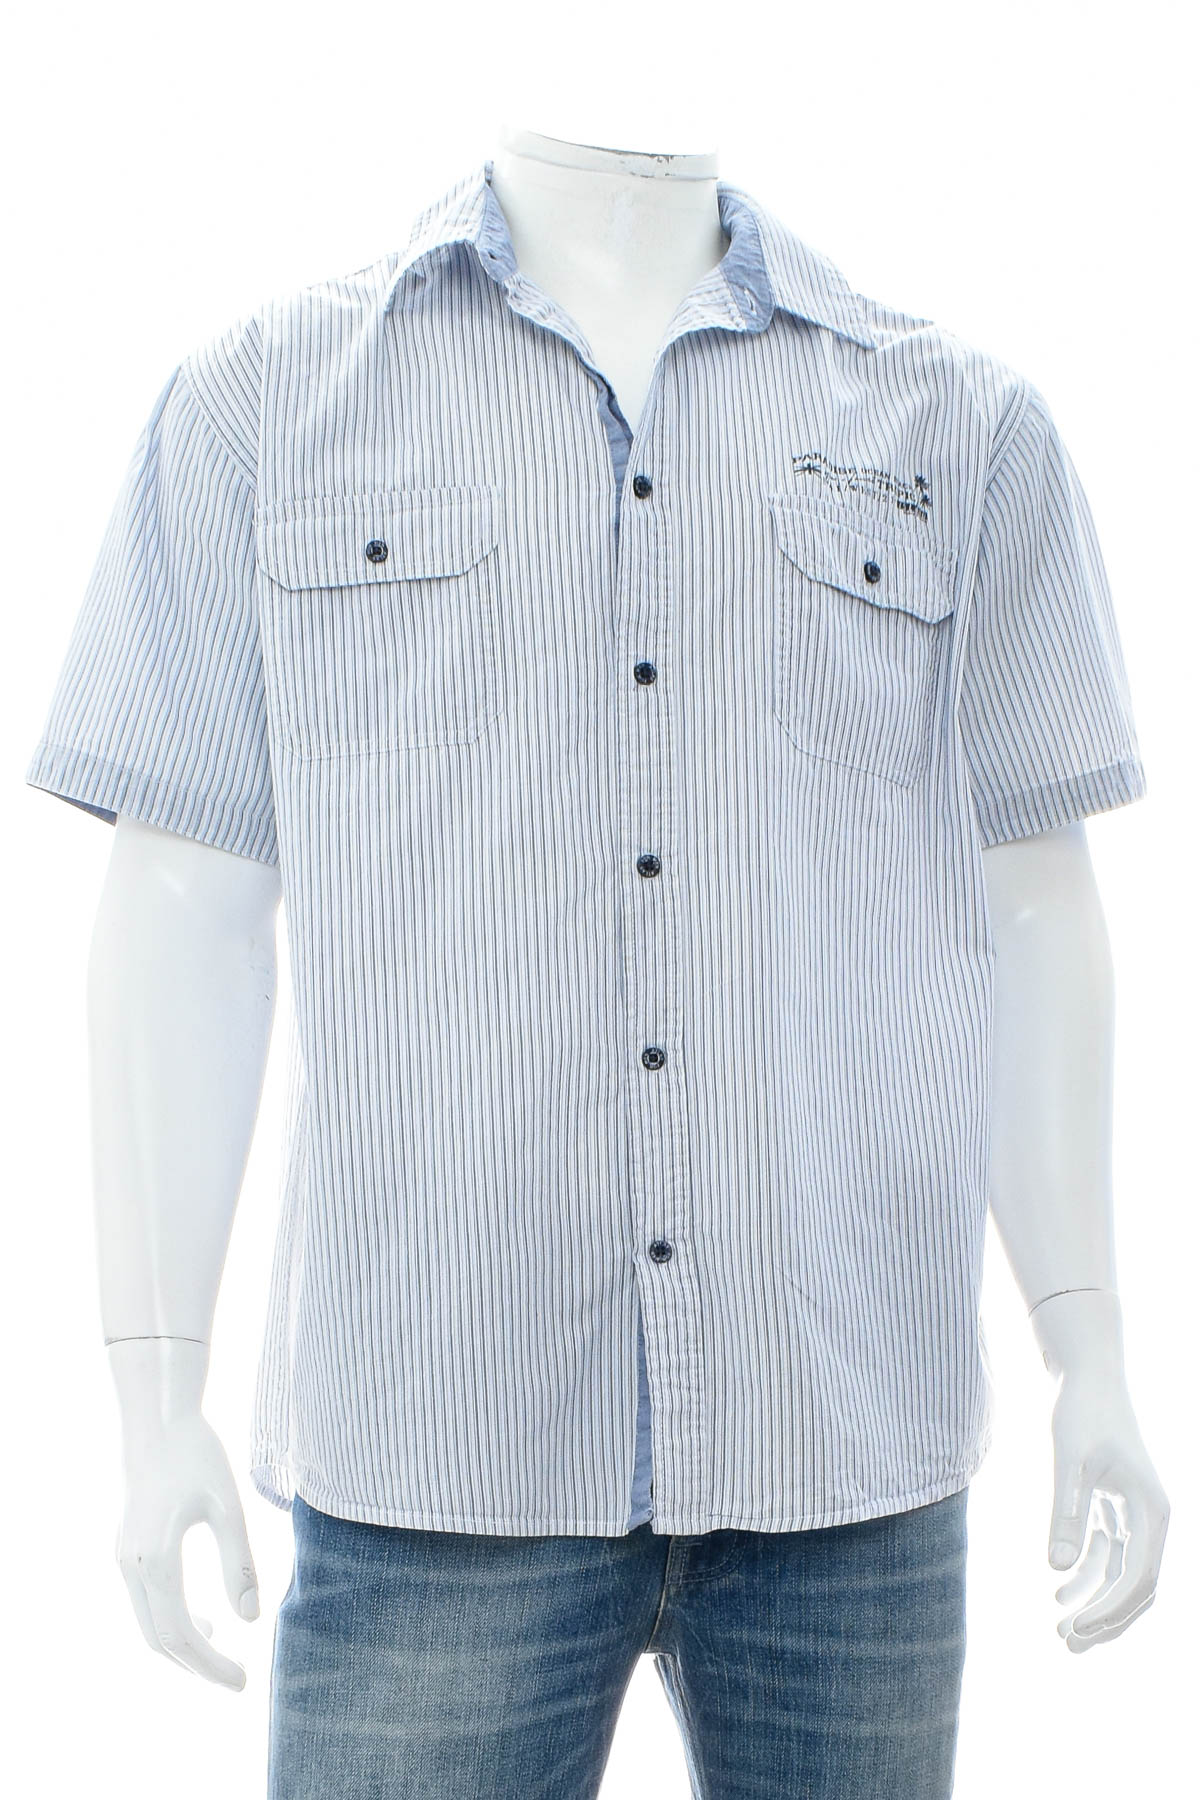 Ανδρικό πουκάμισο - ATLAS for MEN - 0